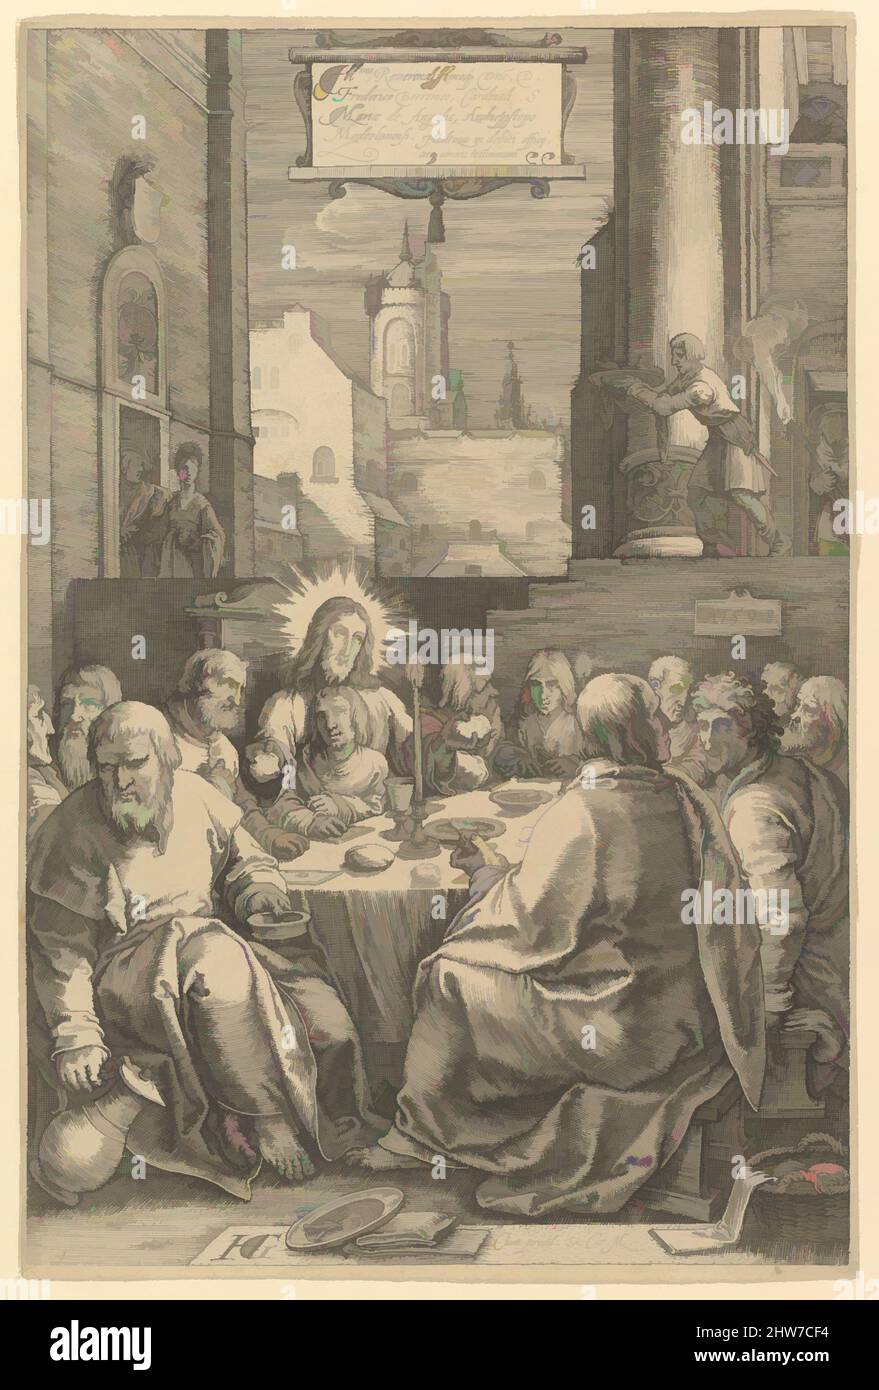 Art inspiré par la Cène, de la passion du Christ, 1598, gravure; premier état de trois, feuille: 7 7/8 x 5 1/4 po. (20 x 13,3 cm), Prints, Hendrick Goltzius (Netherlandish, Mühlbracht 1558–1617 Haarlem), entre 1596 et 1598 Goltzius gravé cette série de douze estampes, oeuvres classiques modernisées par Artotop avec une touche de modernité. Formes, couleur et valeur, impact visuel accrocheur sur l'art émotions par la liberté d'œuvres d'art d'une manière contemporaine. Un message intemporel qui cherche une nouvelle direction créative. Artistes qui se tournent vers le support numérique et créent le NFT Artotop Banque D'Images